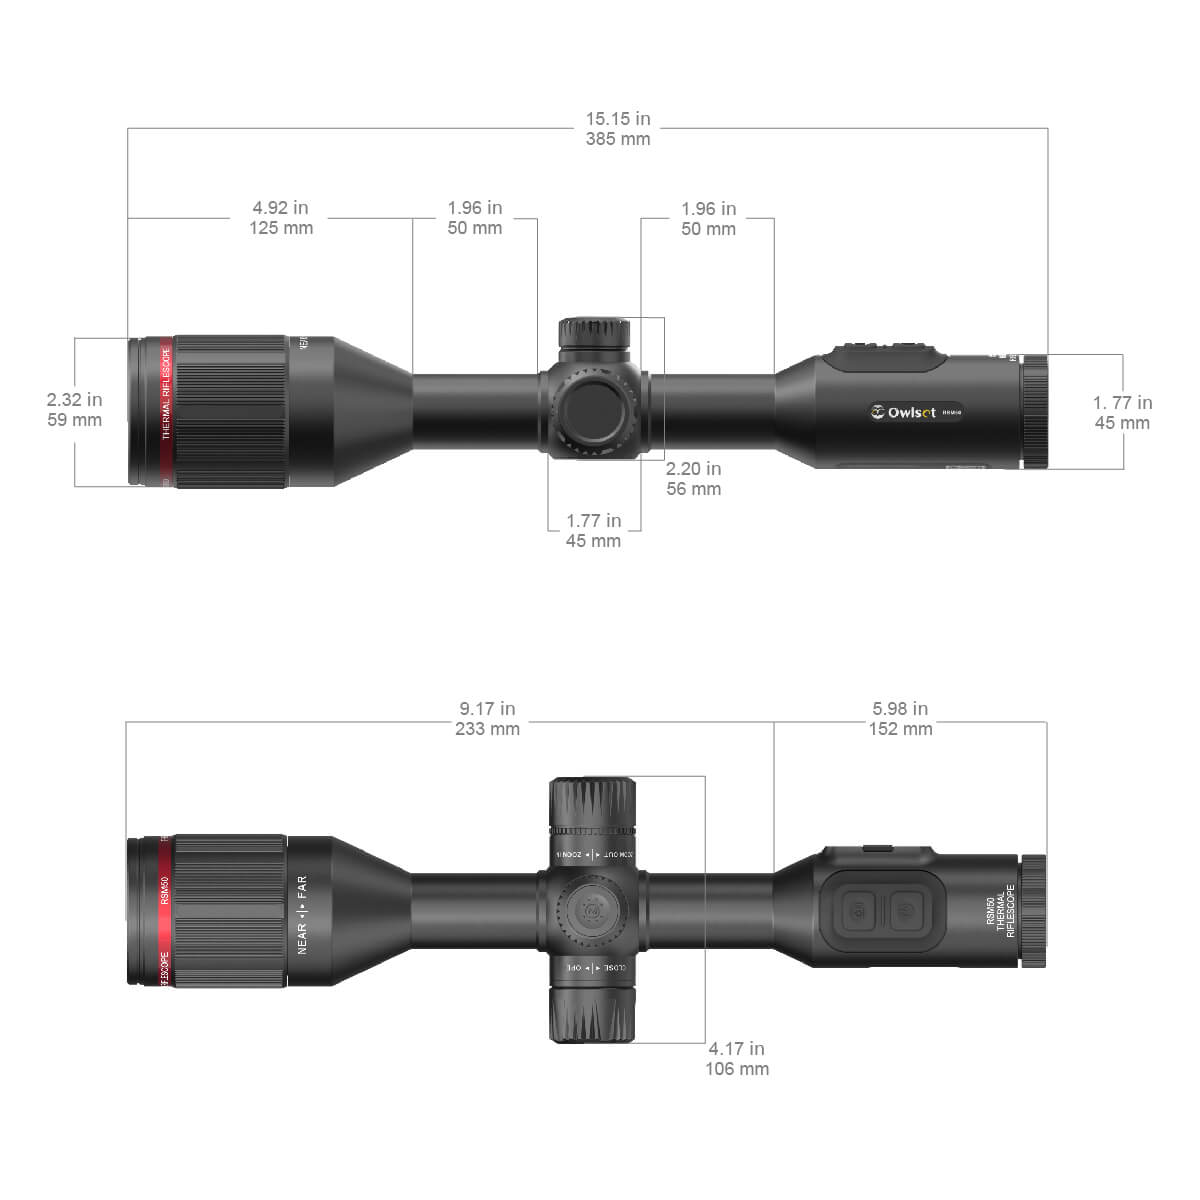 VEOT-RS01 RSM50 Riflescope Dimensions